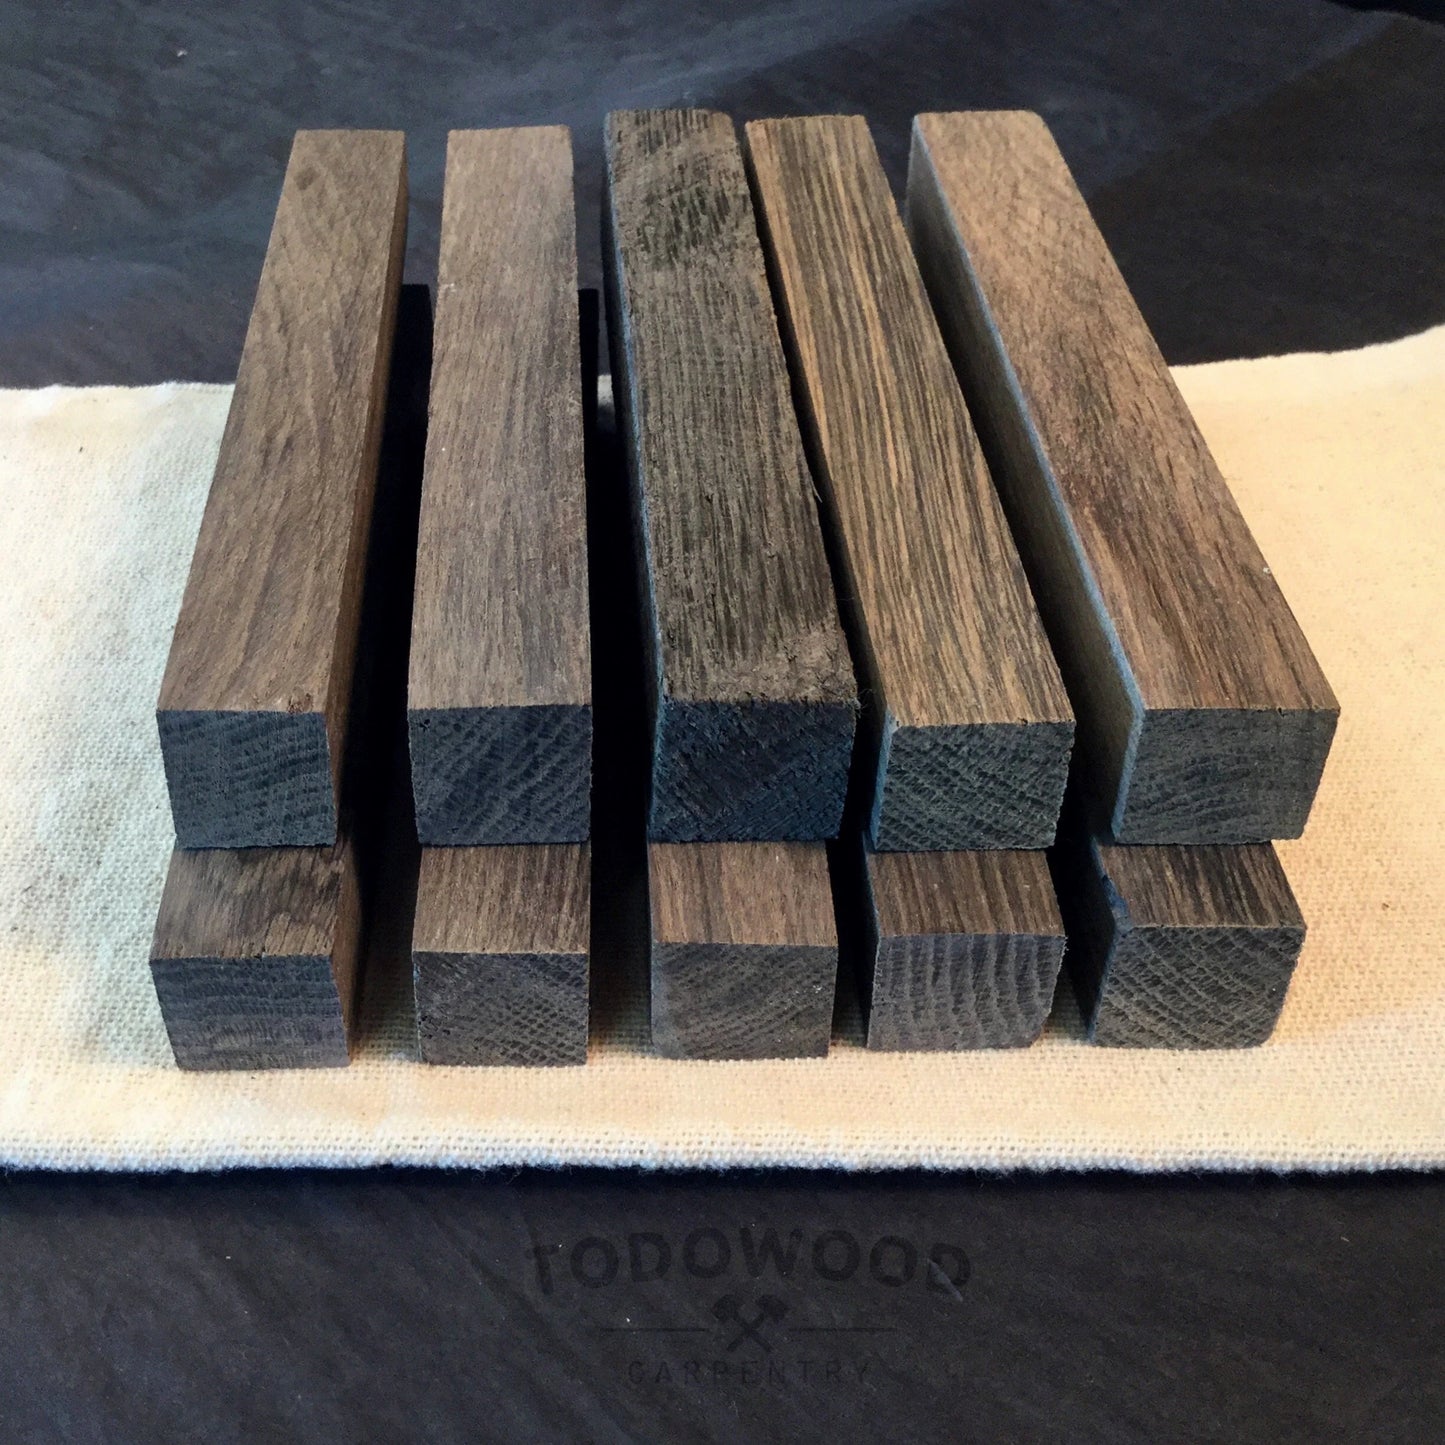 BOG OAK, Fumed Oak, Blanks 125/18/18 mm, for Pen Making, Woodworking, Precious Wood.